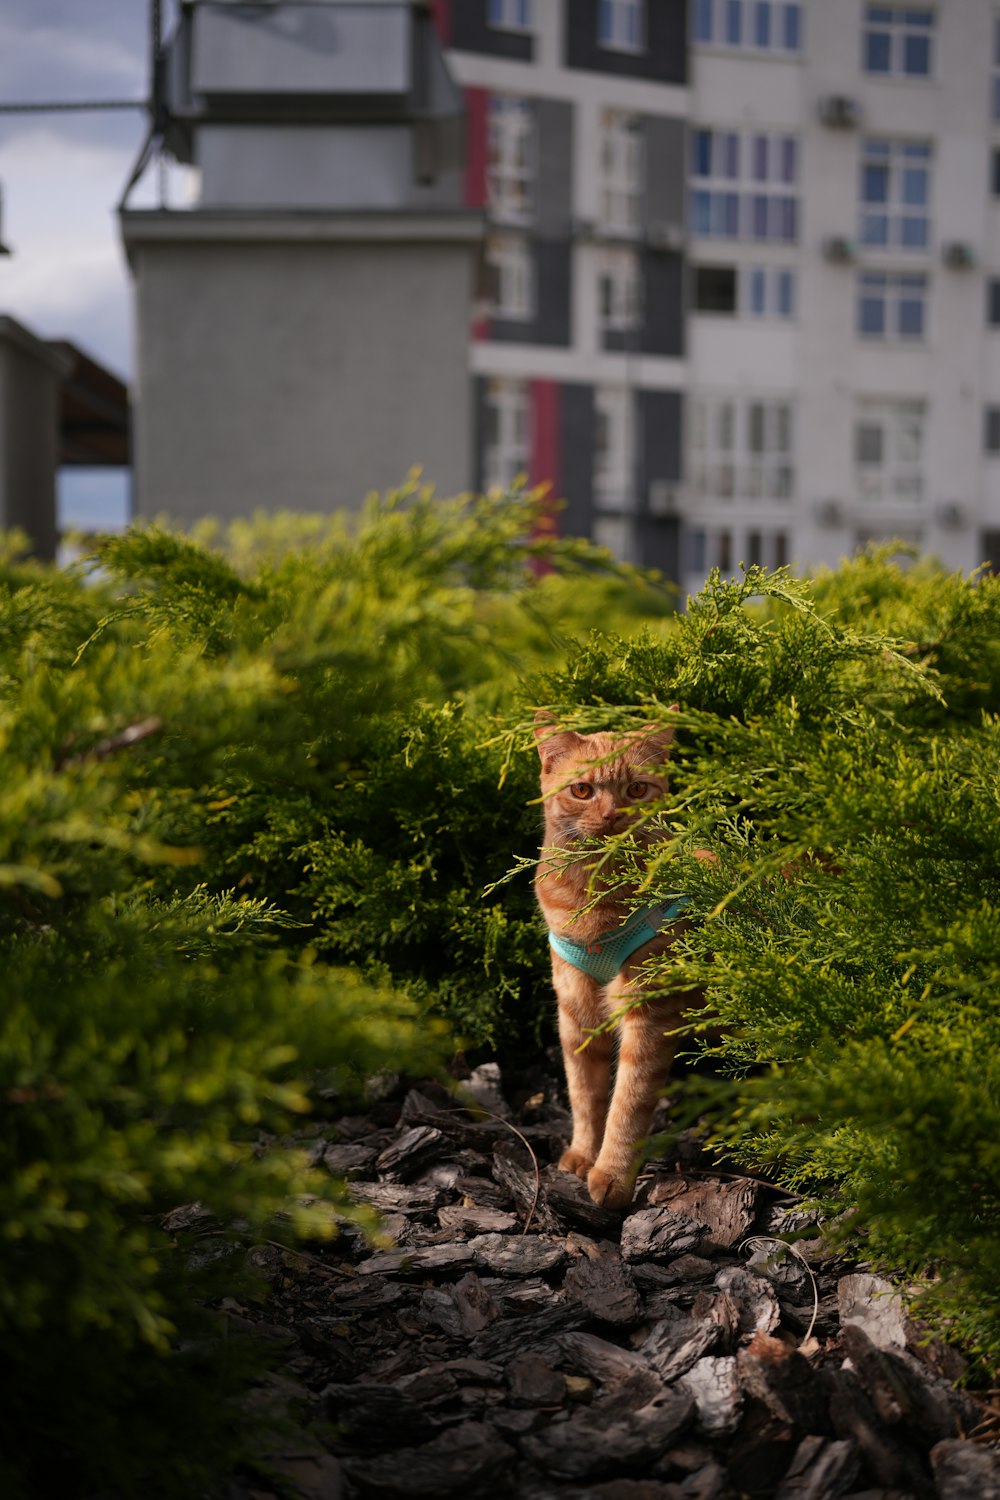 a cat is walking through a bushy area